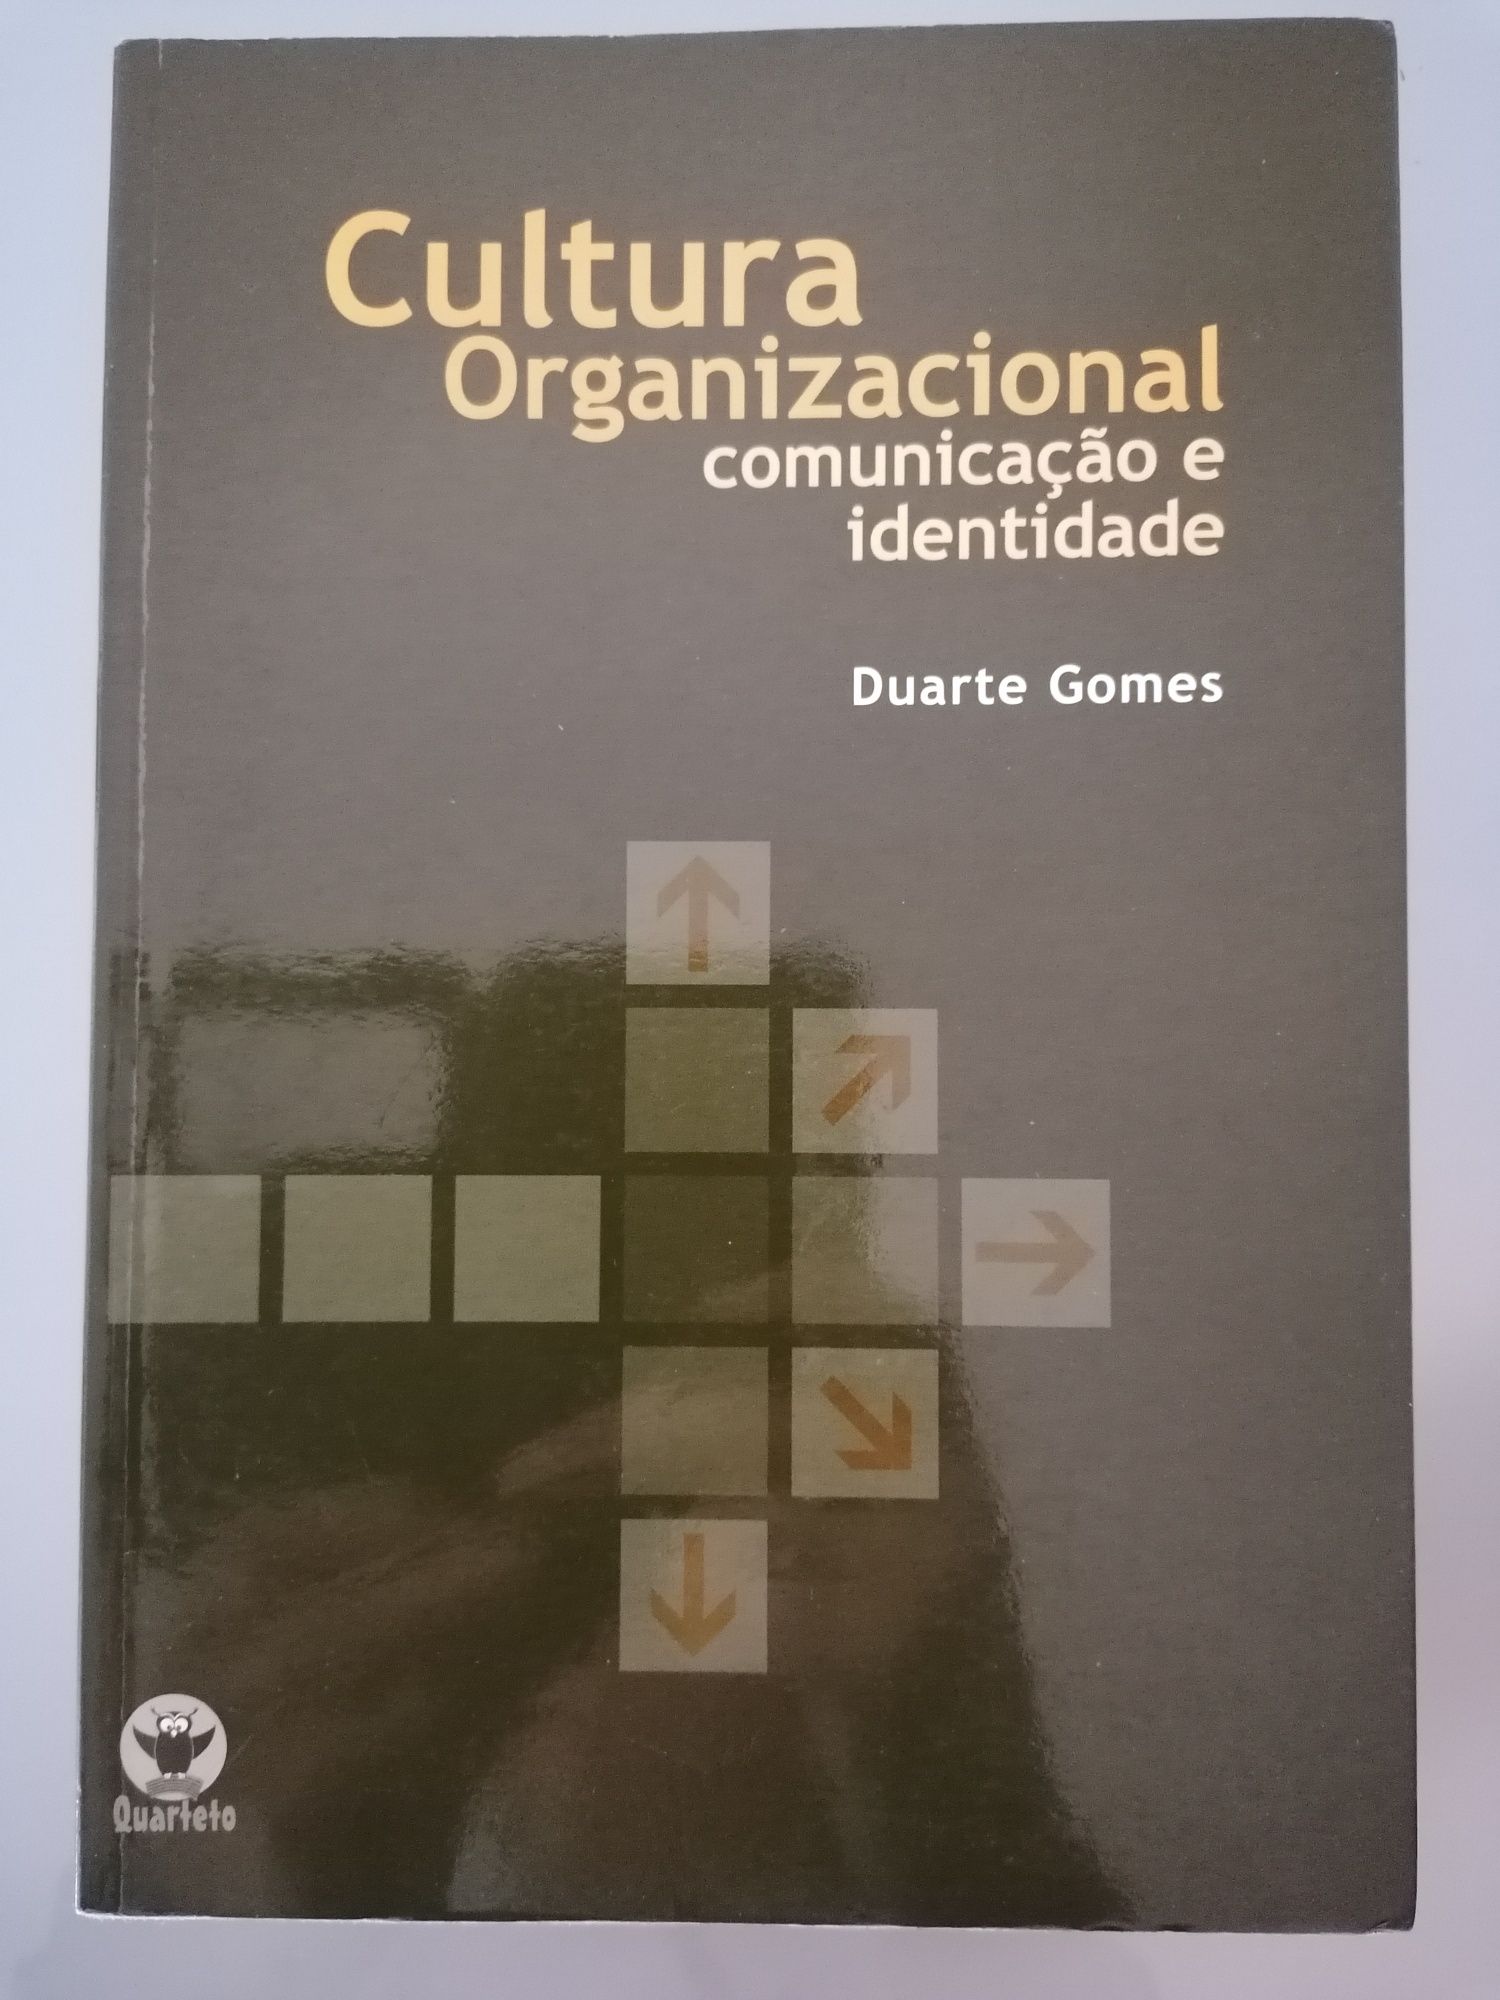 Livro Cultura Organizacional - Duarte Gomes (org.)